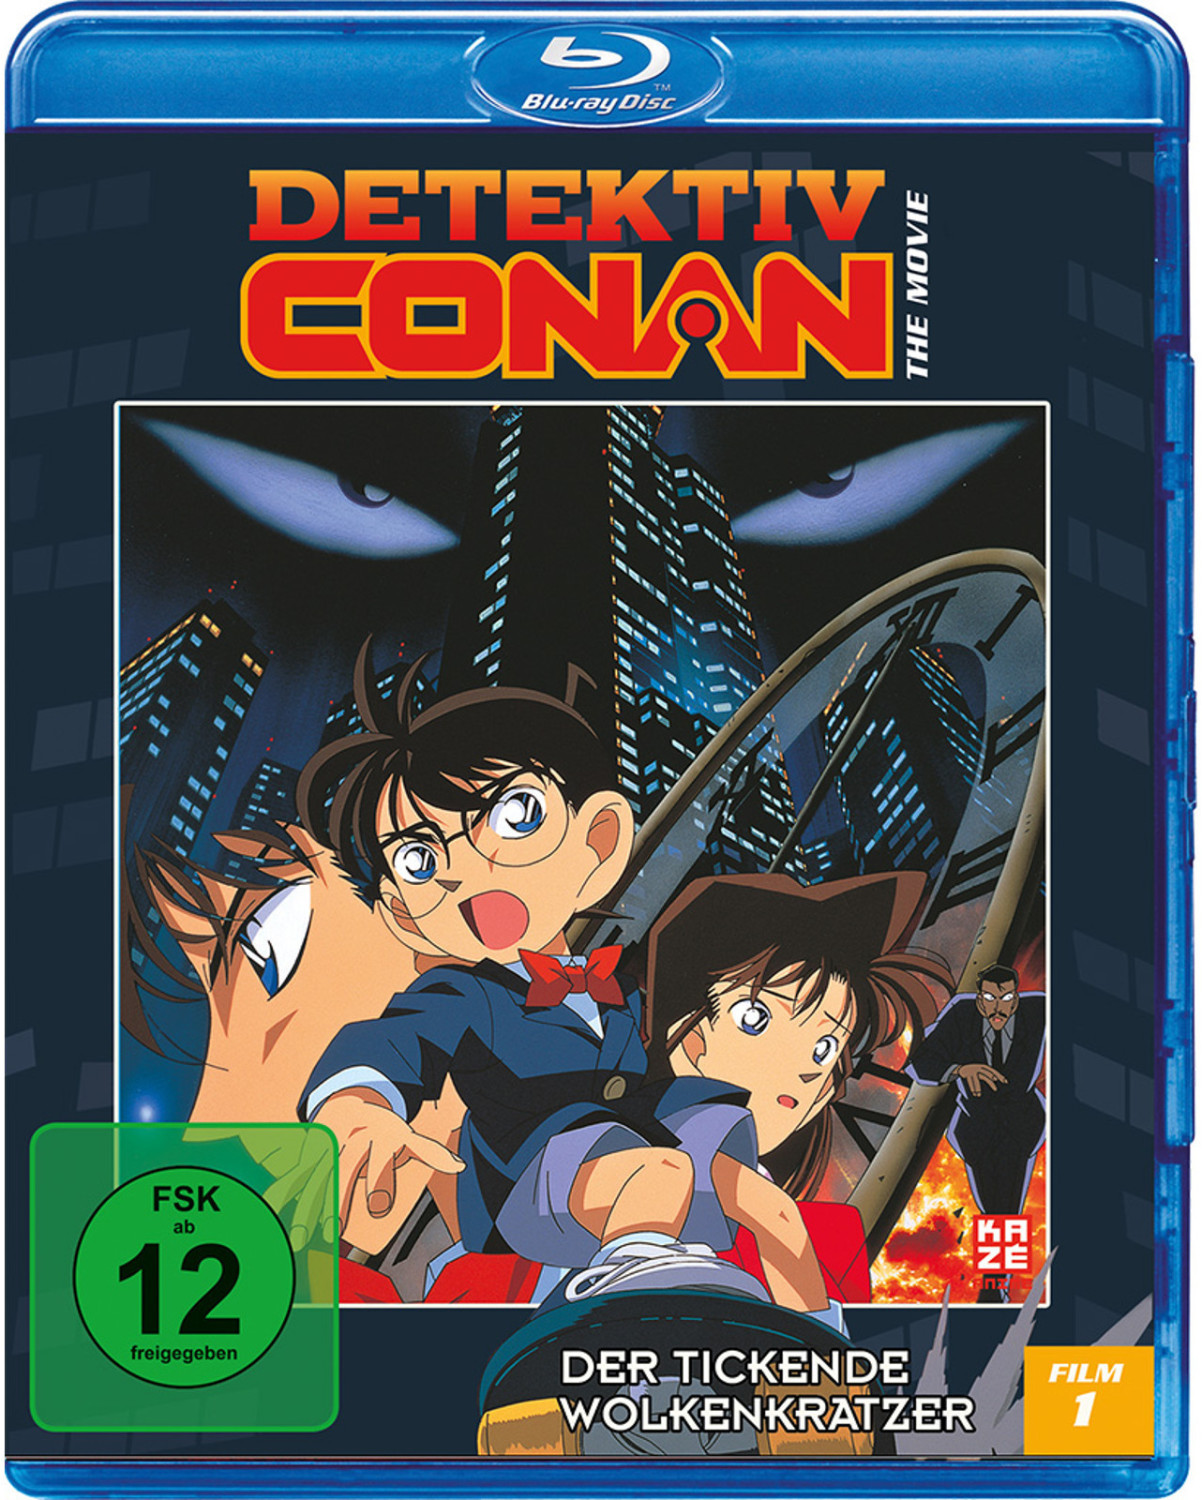 #Detektiv Conan – 1. Film: Der tickende Wolkenkratzer [Blu-ray]#